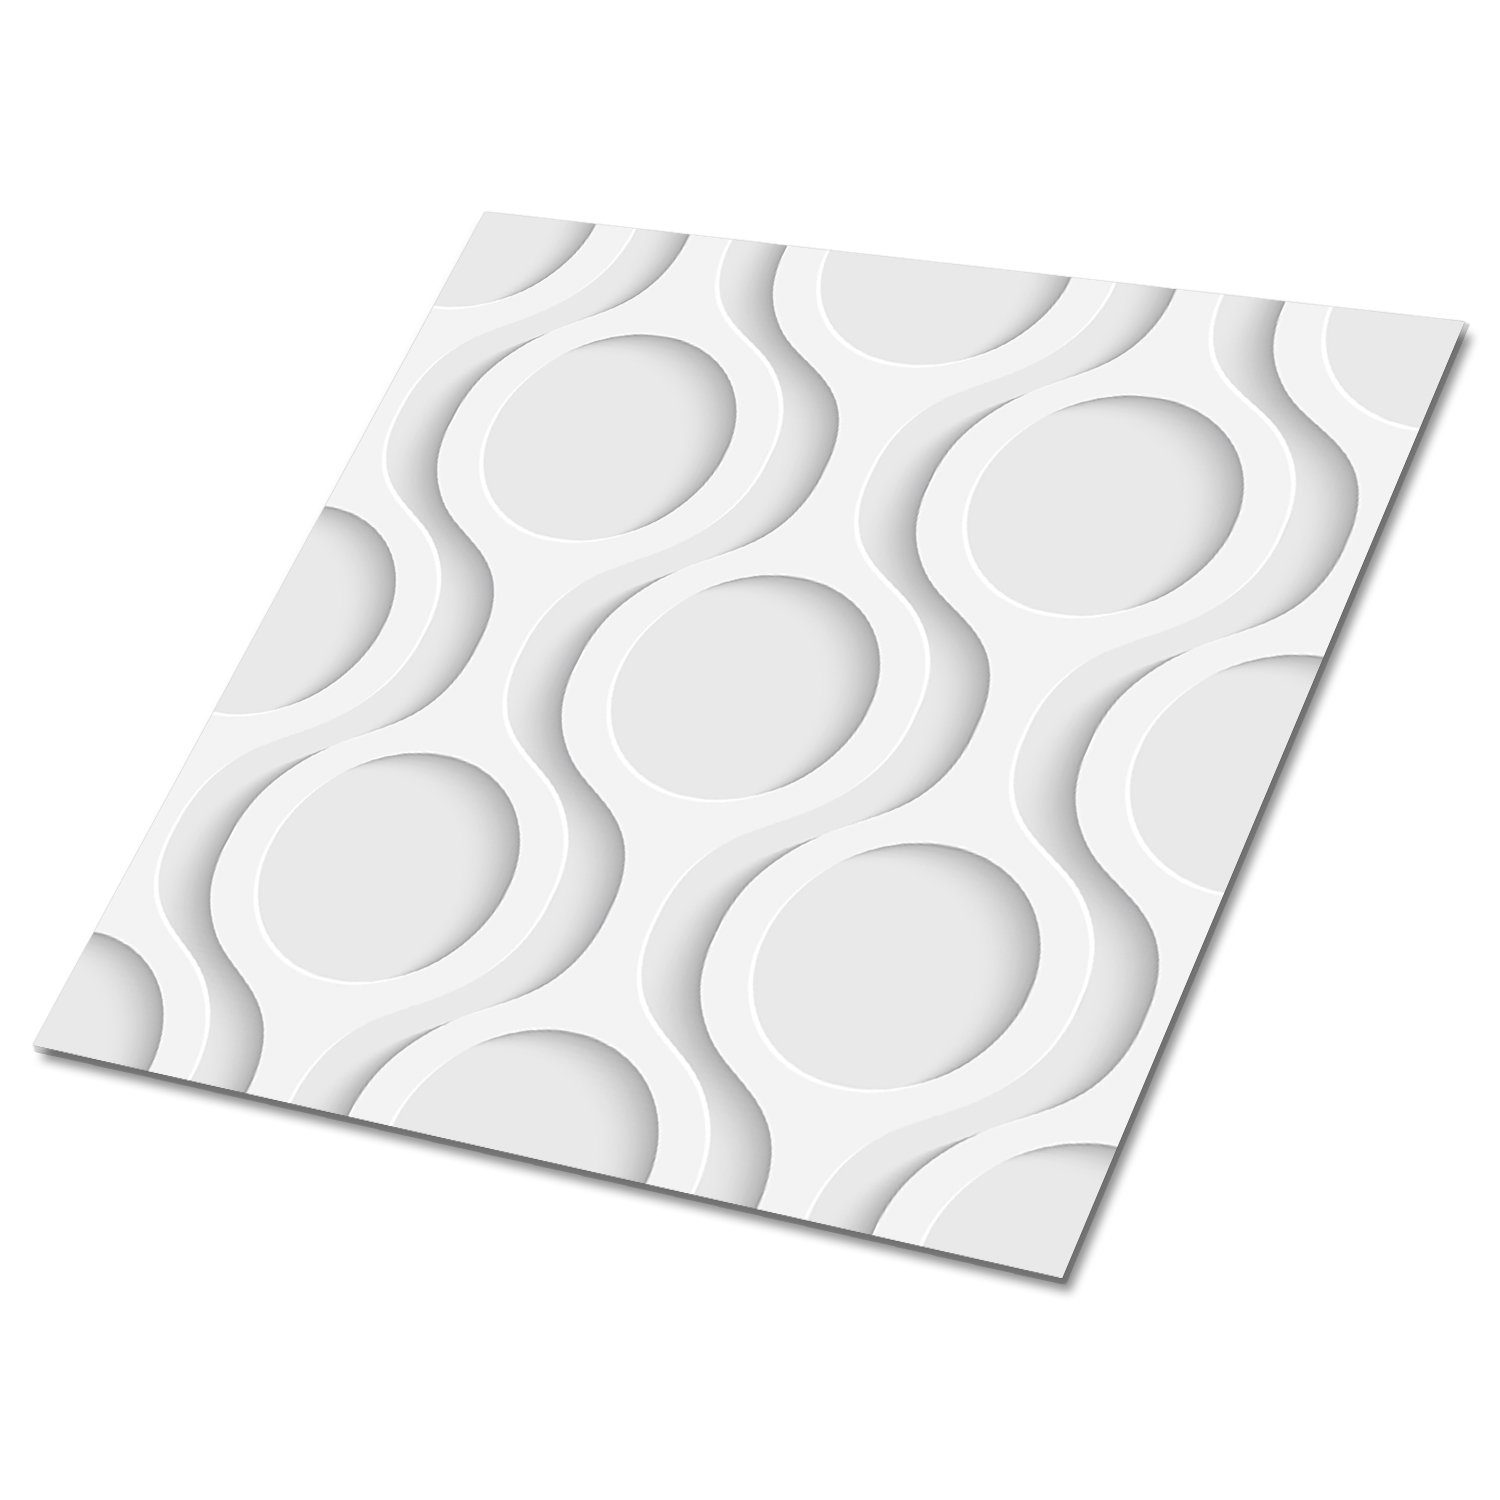 Tulup Vinylfliesen Selbstklebende Fliesen Platten PVC 30 cm x 30 cm Wandpaneele 9 Stück, Selbstklebende PVC-Fliesen Moderner Stil | Vinylboden